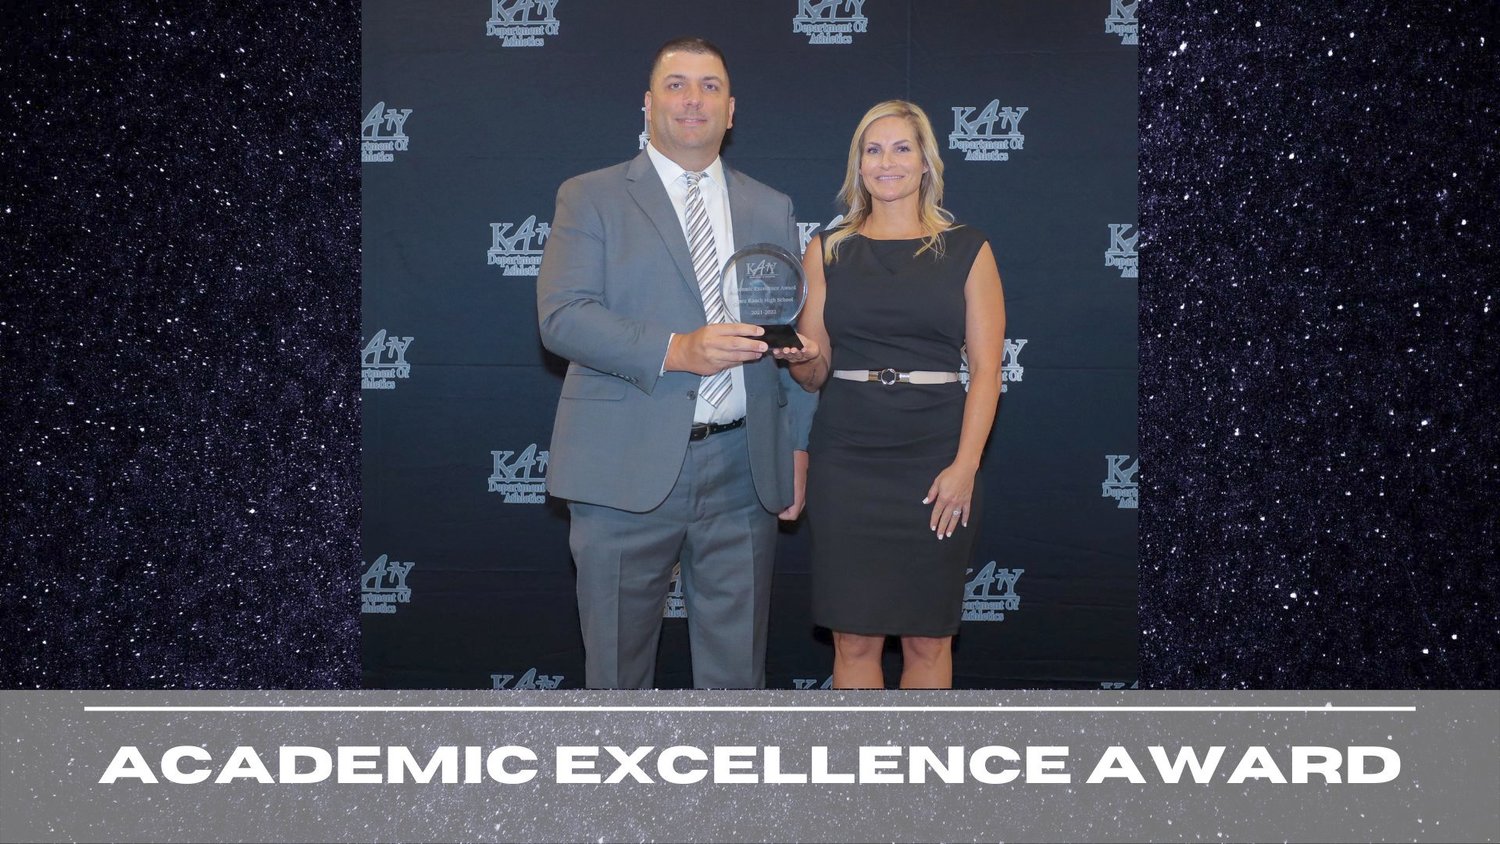 Cinco Ranch won the Academic Excellence award.